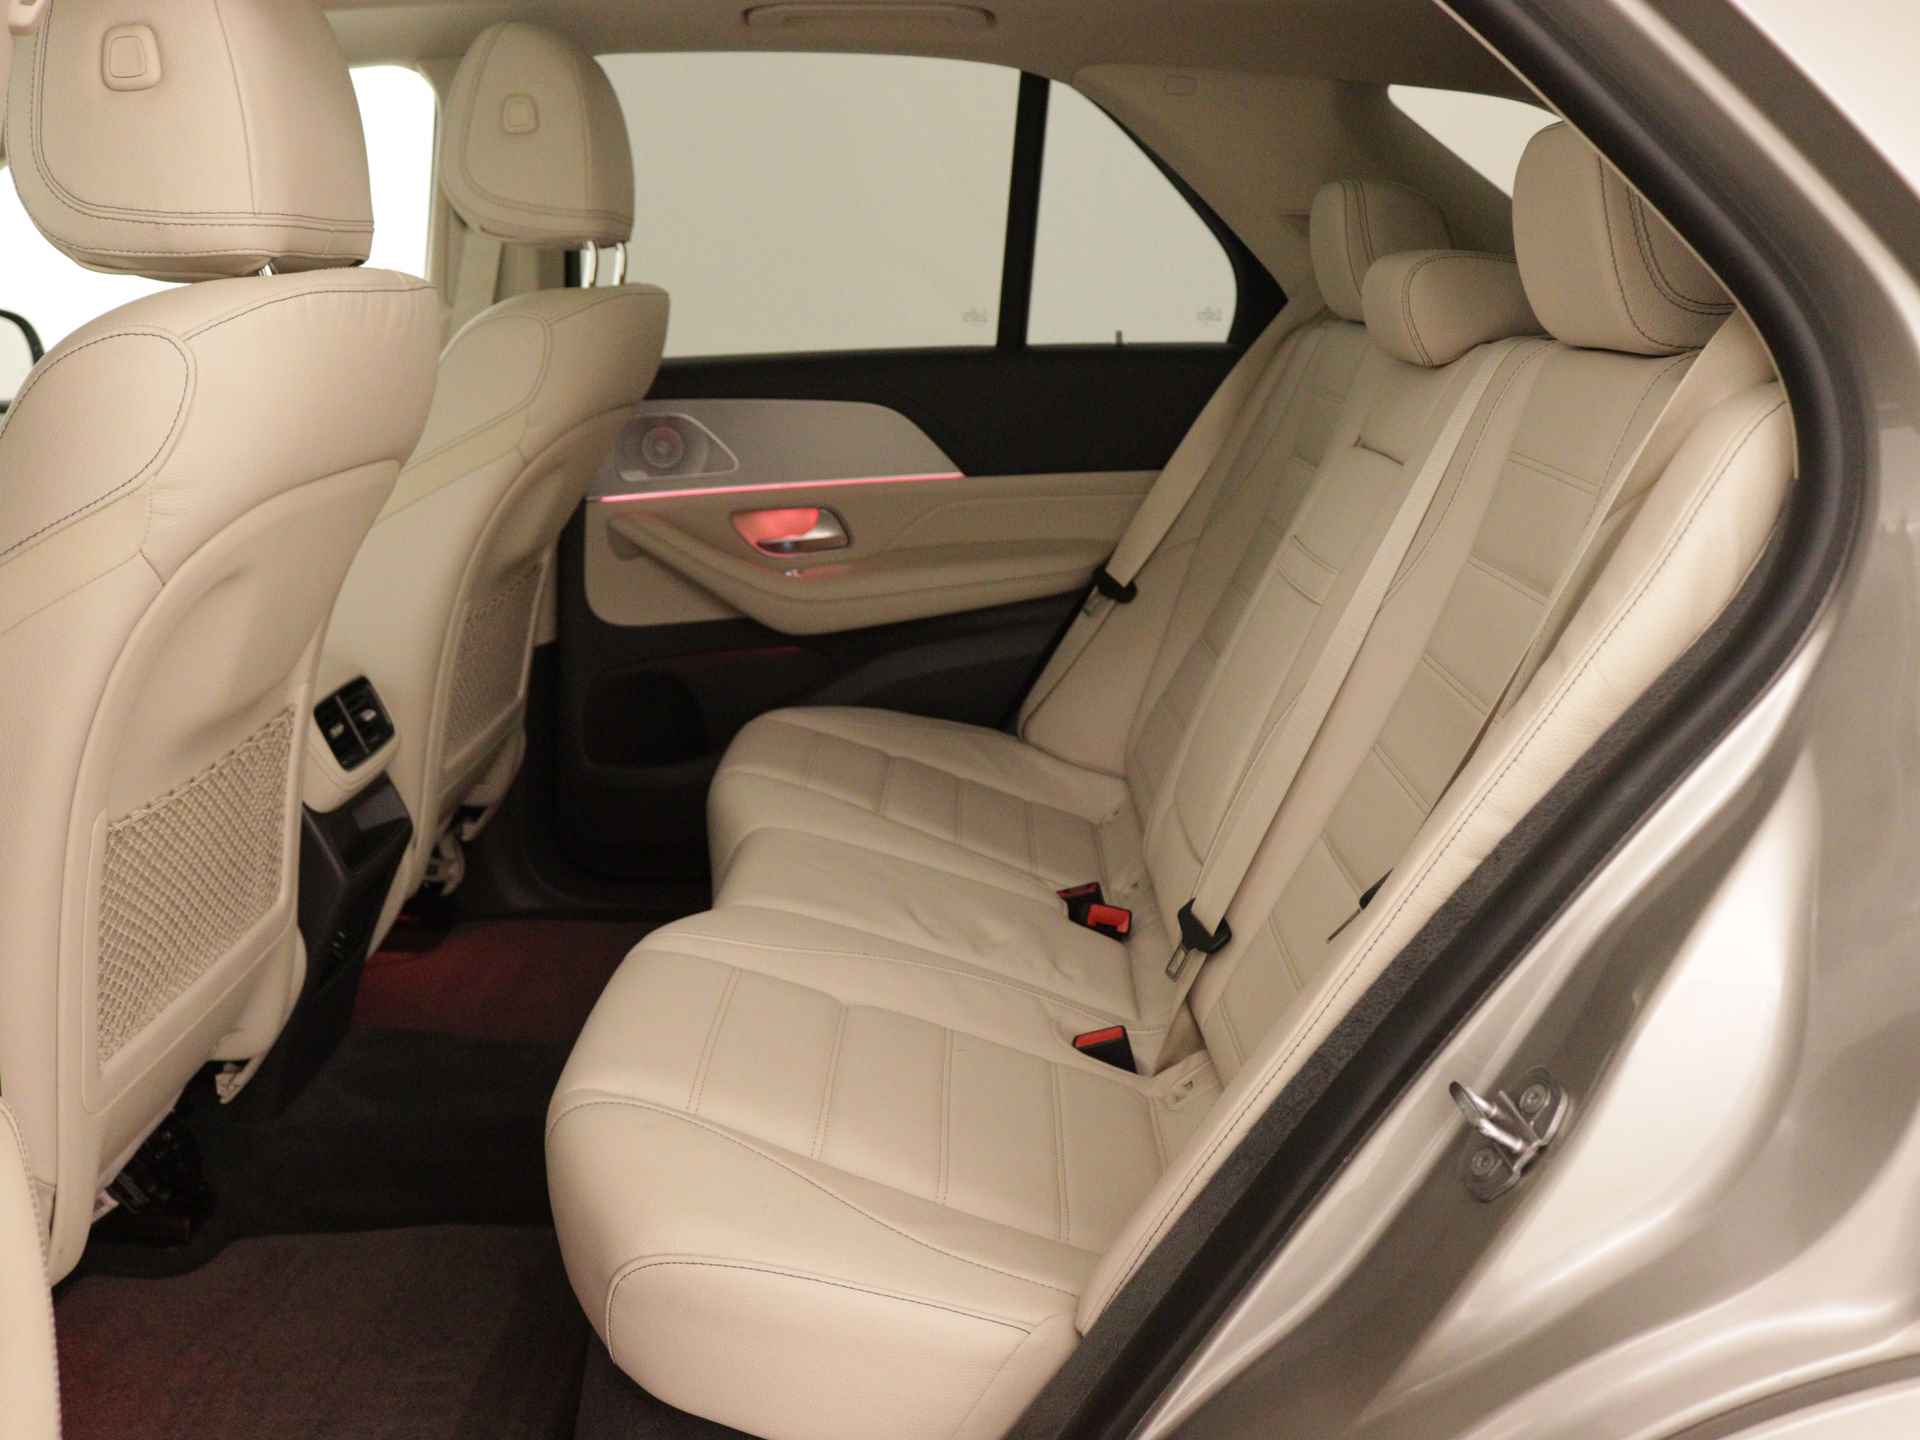 Mercedes-Benz GLE 450 4MATIC AMG Line Premium | Panoramadak | Luchtvering | Burmester | Navigatie | MBUX wide screen | Alarm klasse 3 | Parking support | inclusief 24 maanden MB Certified garantie voor europa - 17/39